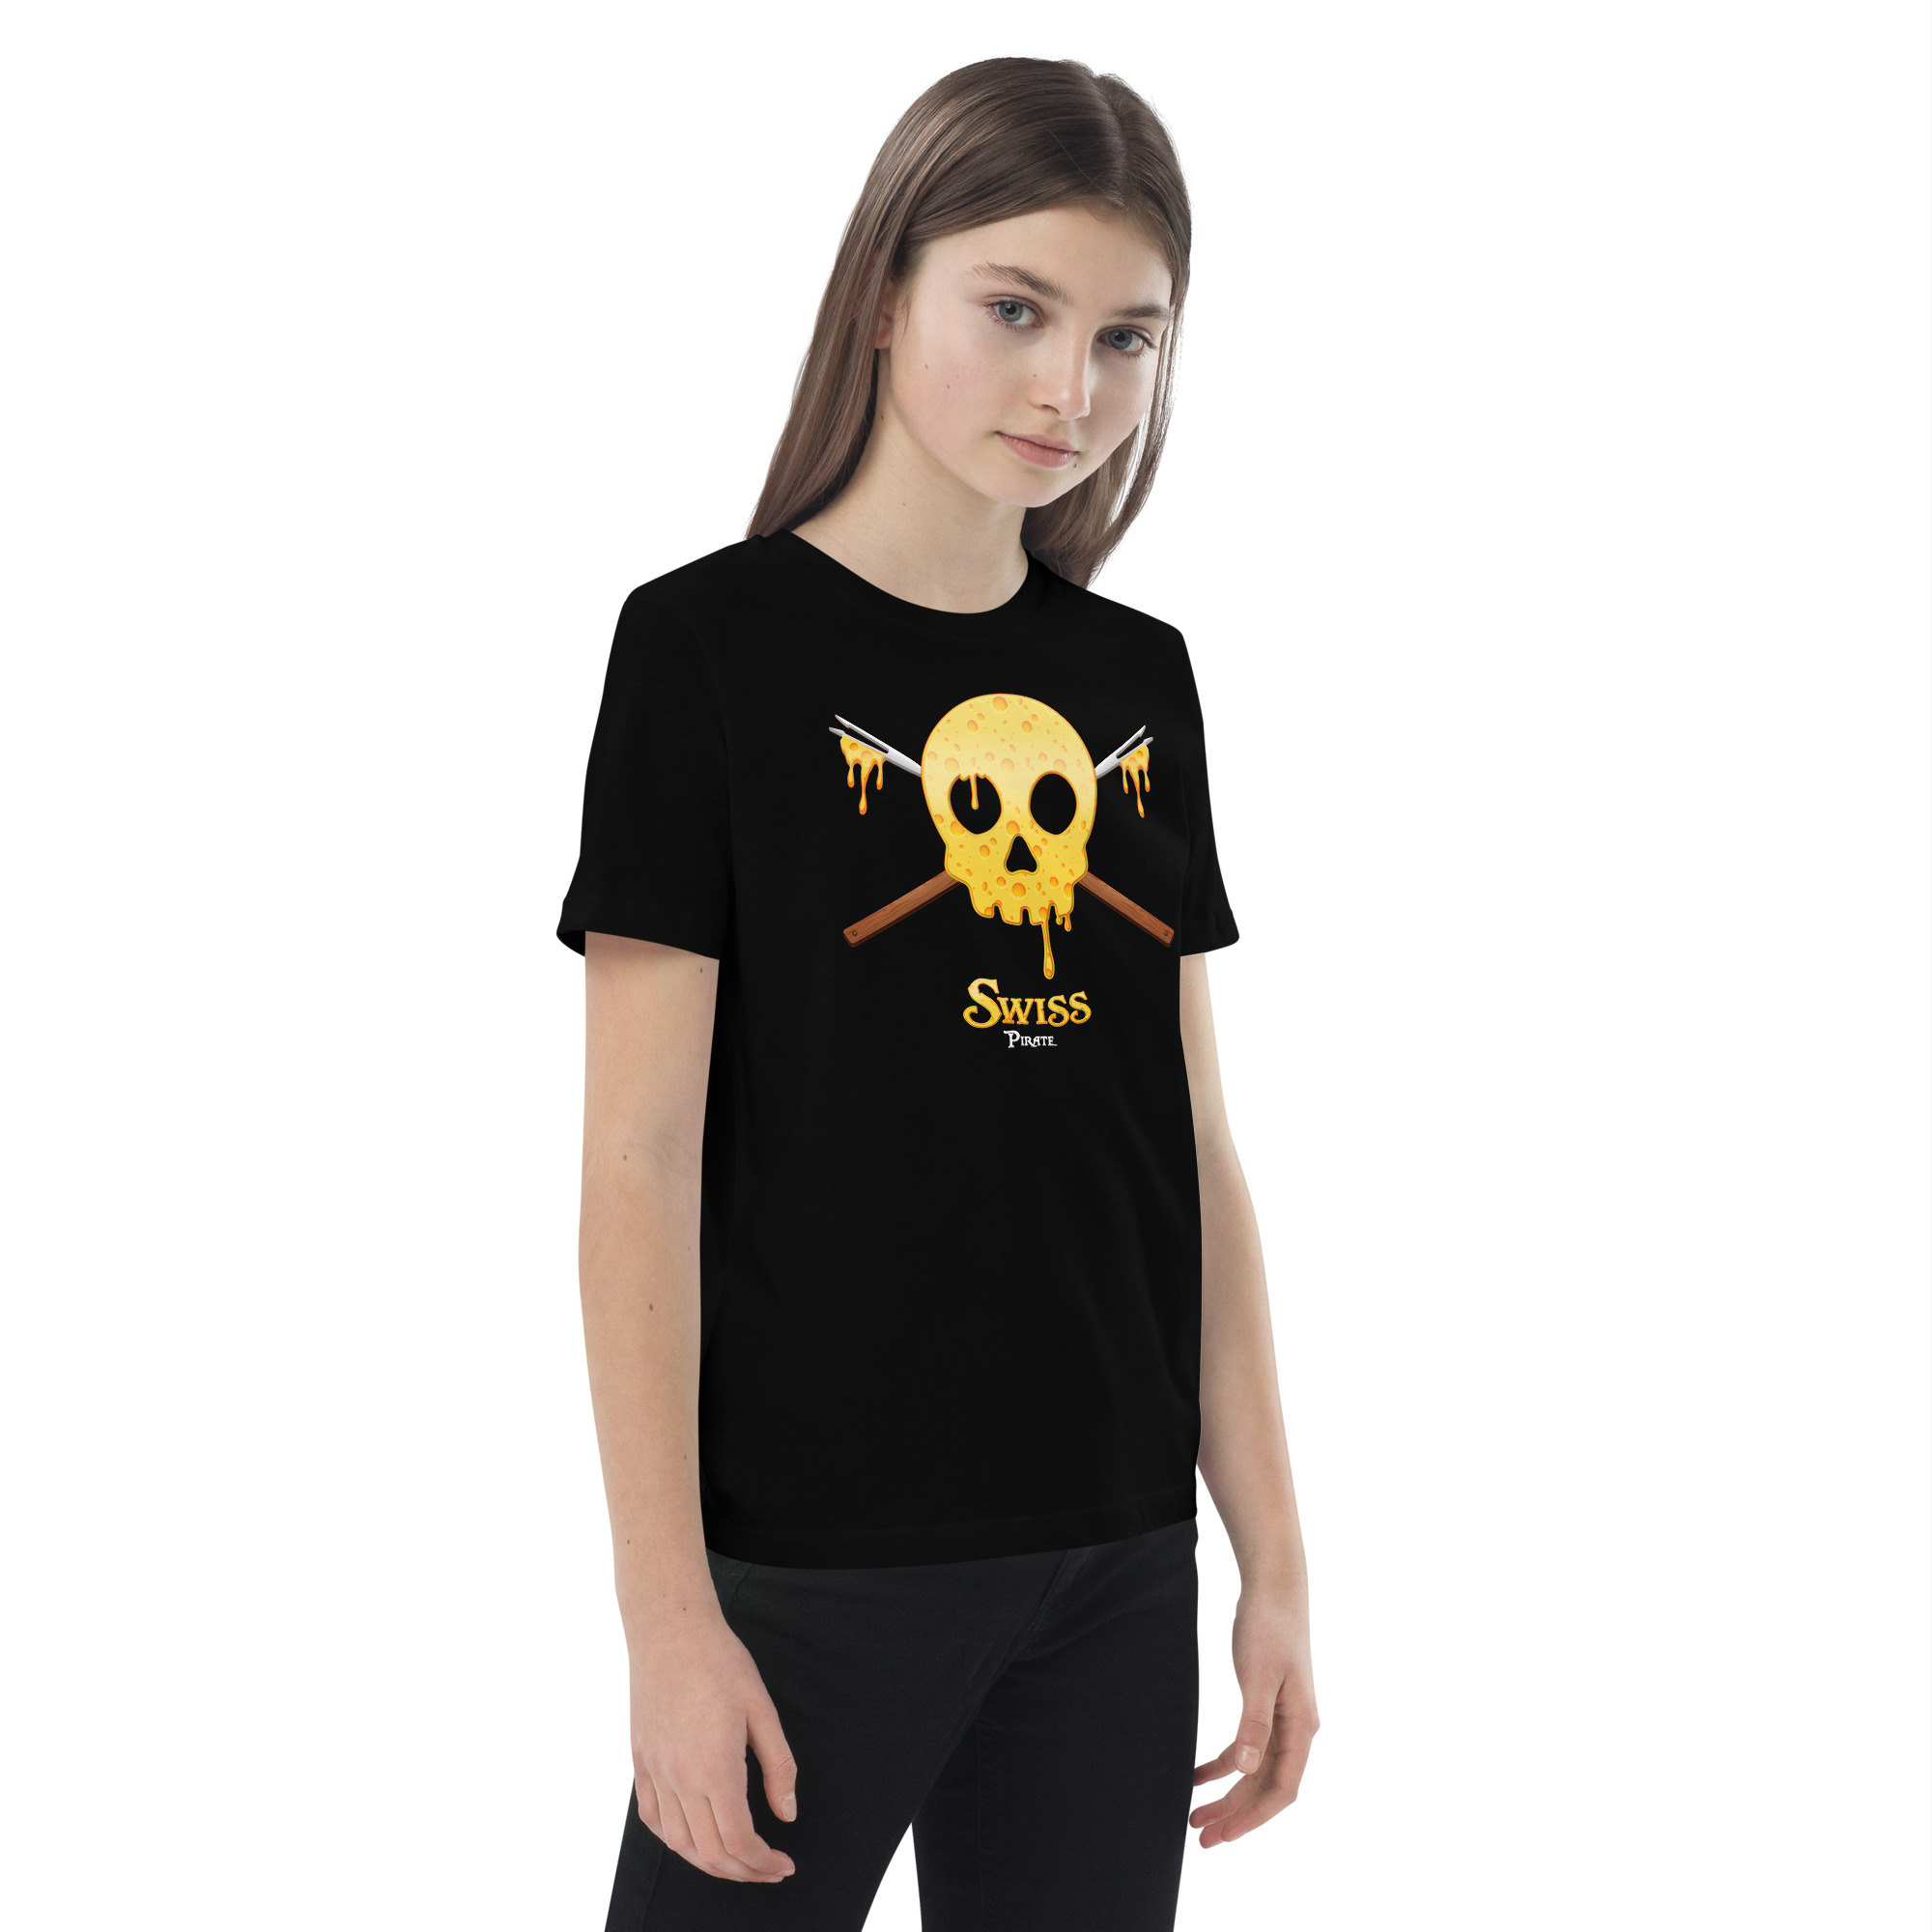 Children’s T-shirt – Switzerland – Swiss Pirate Children Wearyt